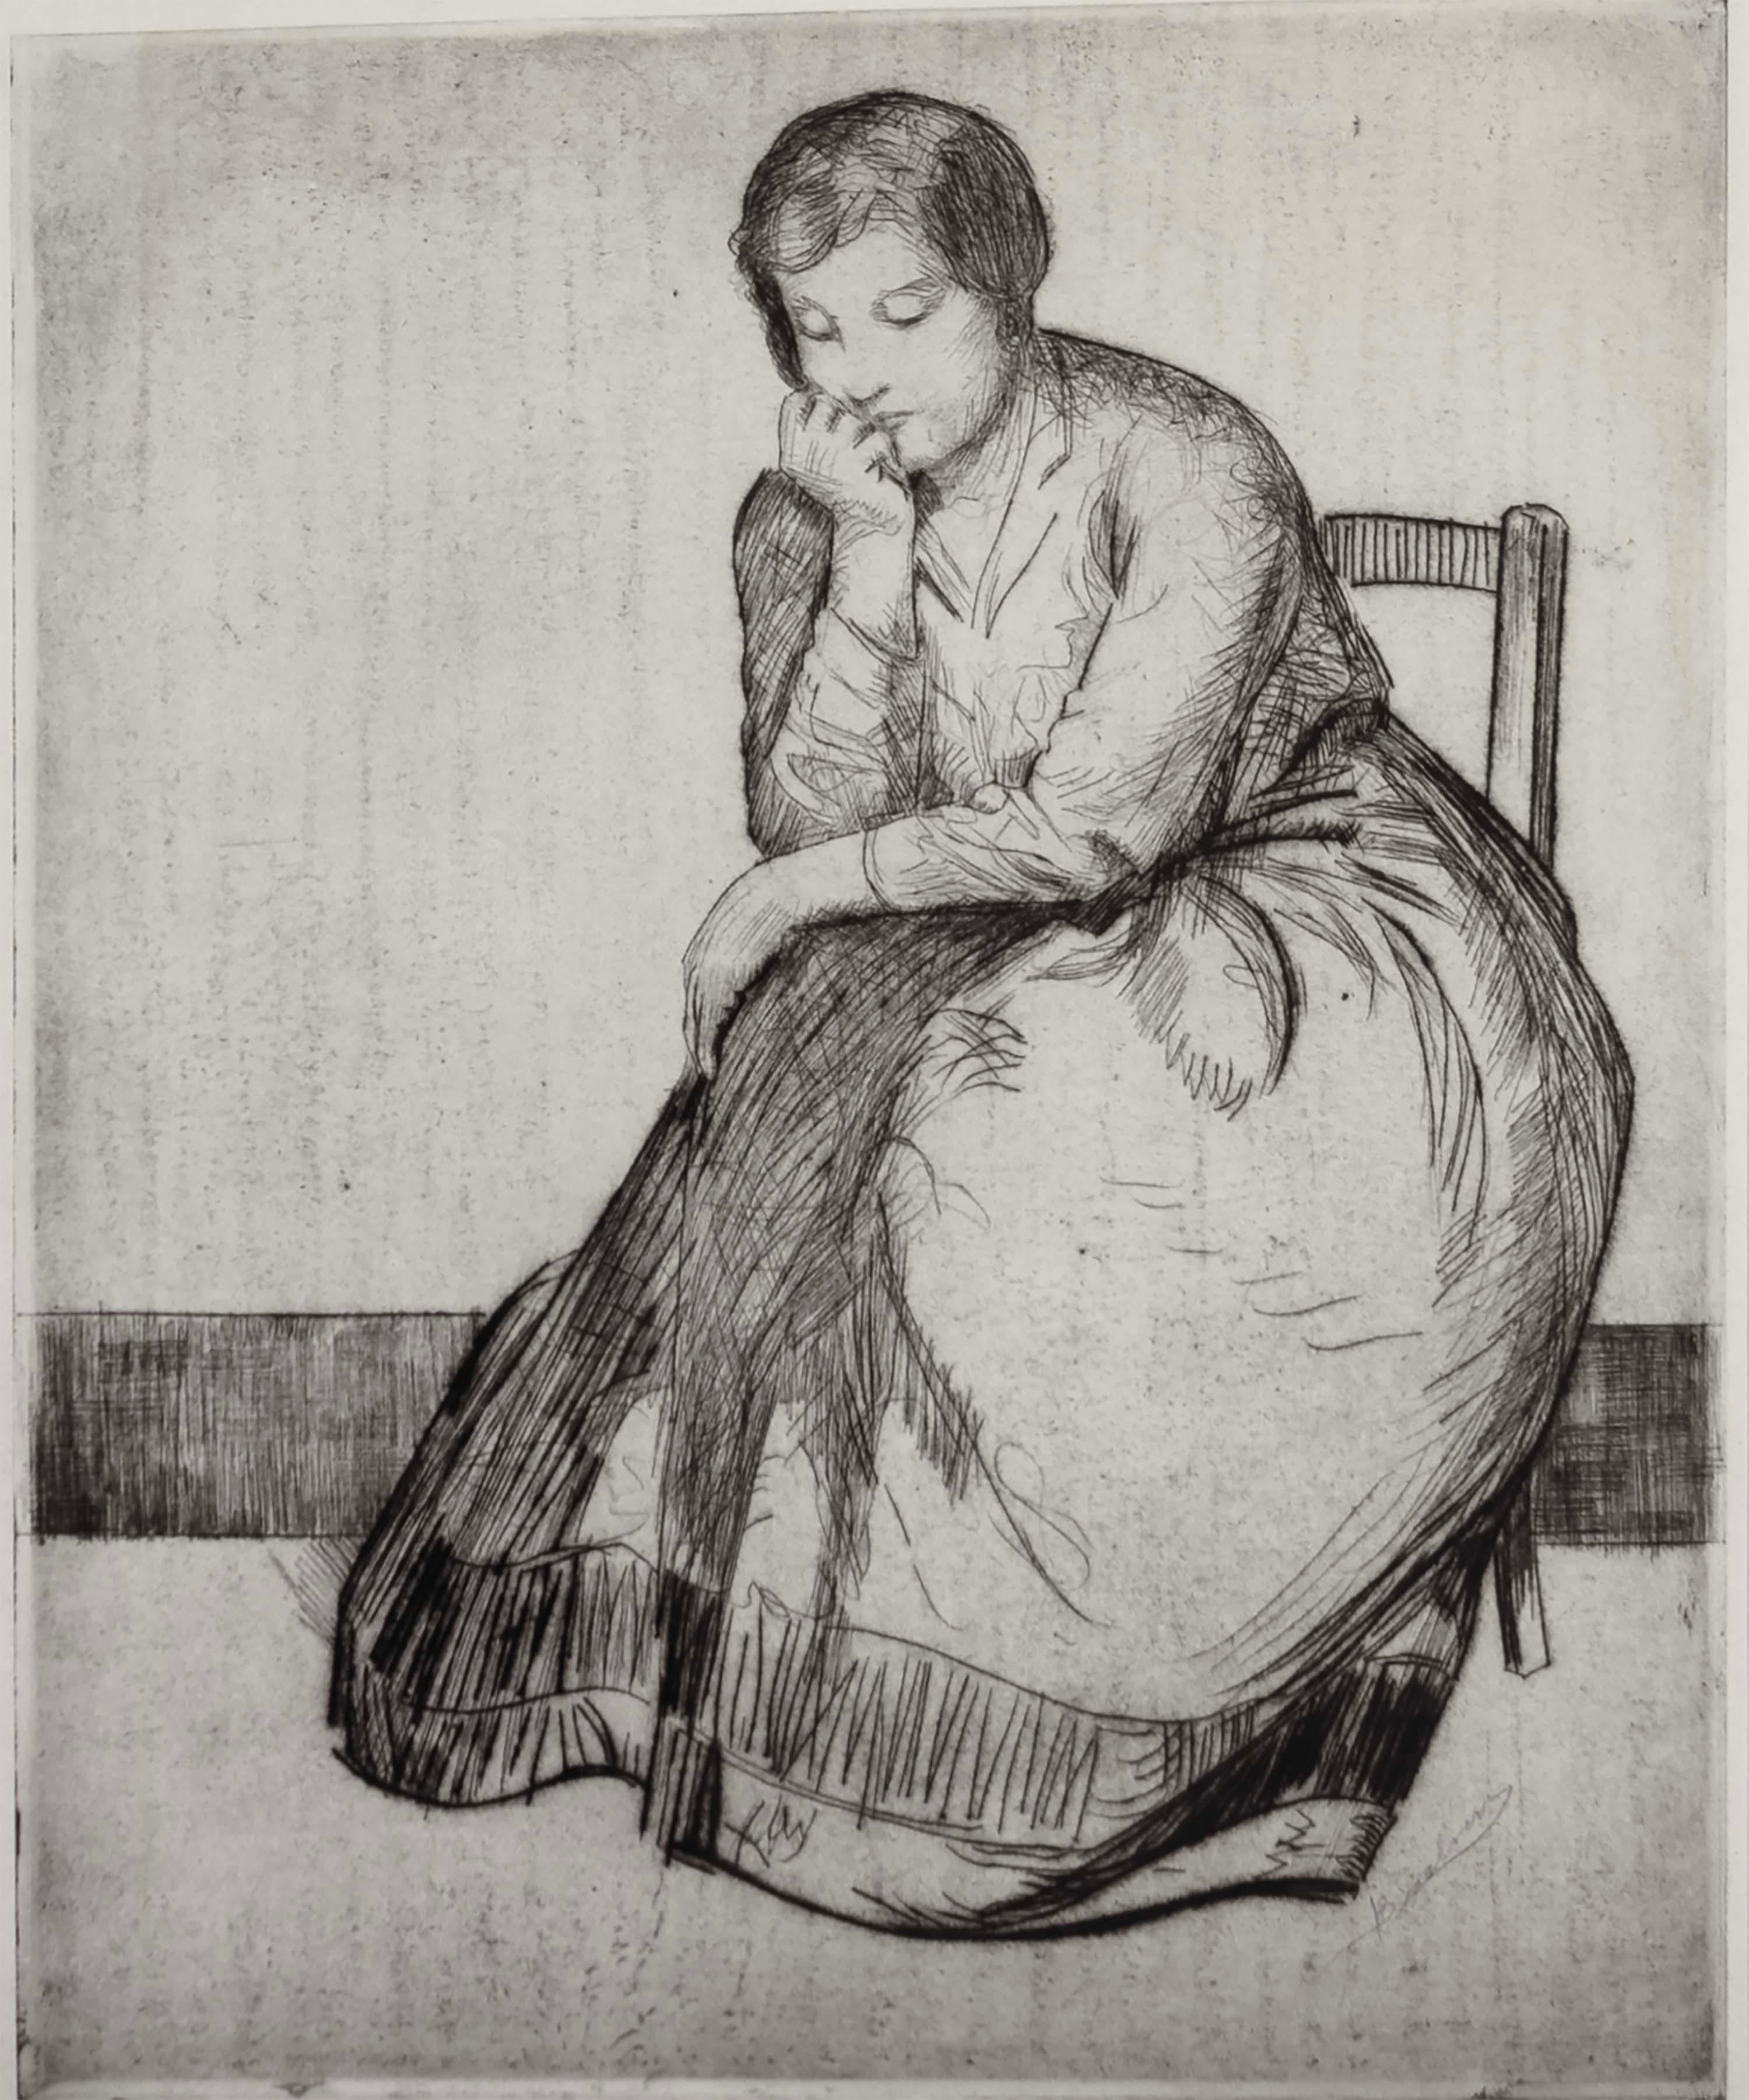 Sentimentale Radierung auf Papier, die eine sitzende Frau darstellt, von dem amerikanischen Künstler Myron Barlow (1873-1937). Unten rechts mit Bleistift handsigniert. Eine schöne Darstellung des amerikanischen Realismus, ca. 1910-1920er Jahre. Aus